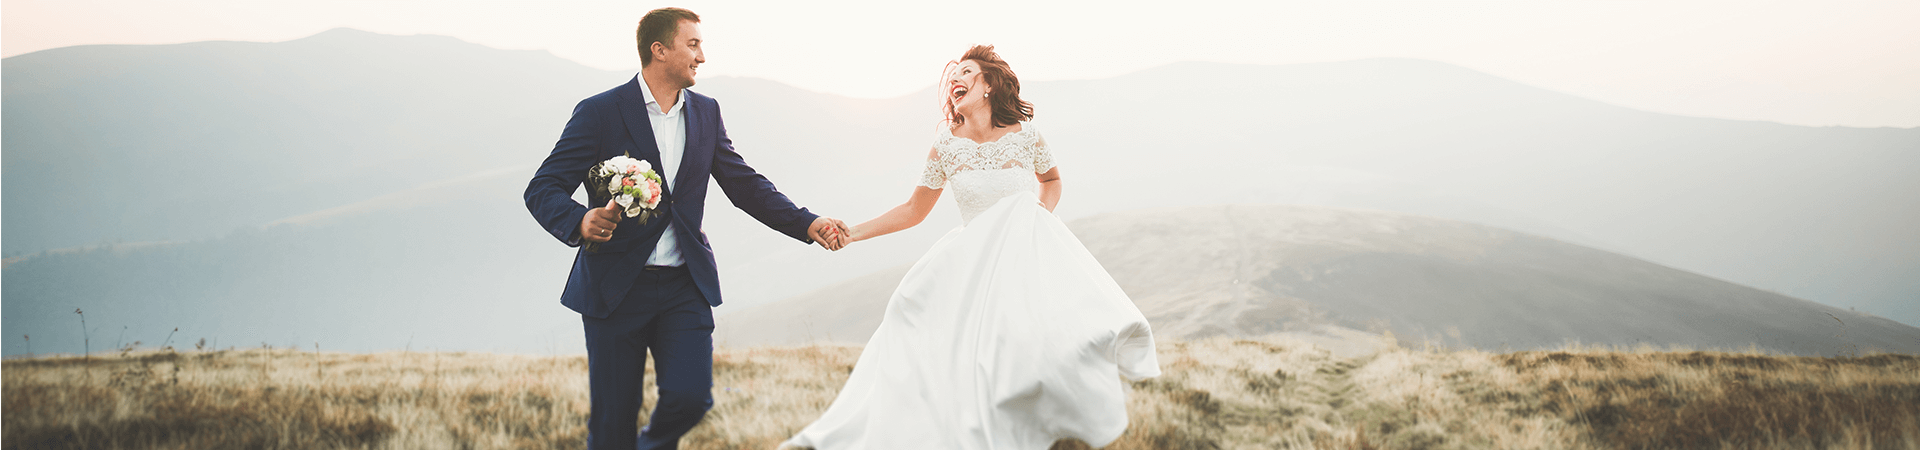 Un homme et une femme en costume et robe de mariée se tiennent la main et riggolent